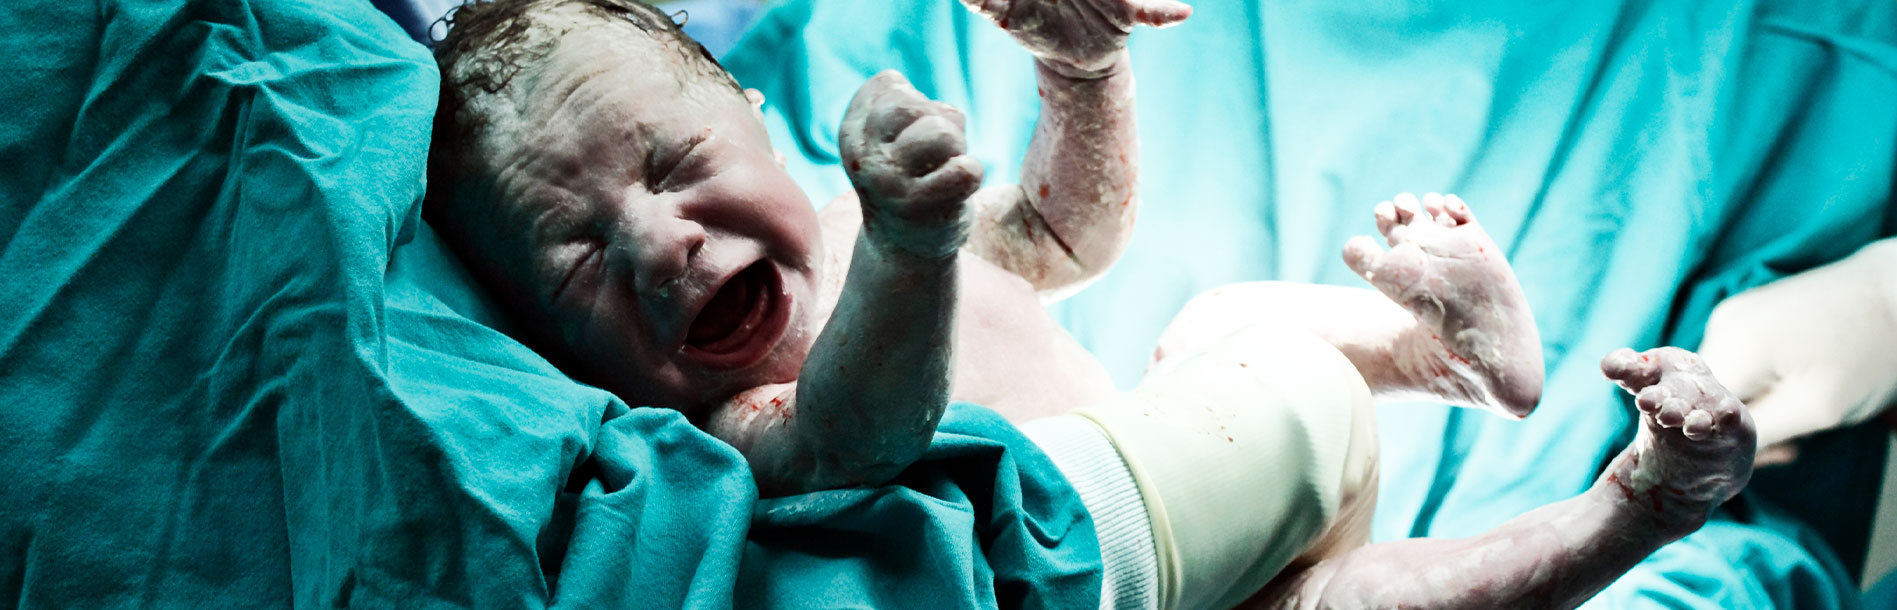 Vérnix caseoso: detalhe importante nas primeiras 24 horas do recém-nascido